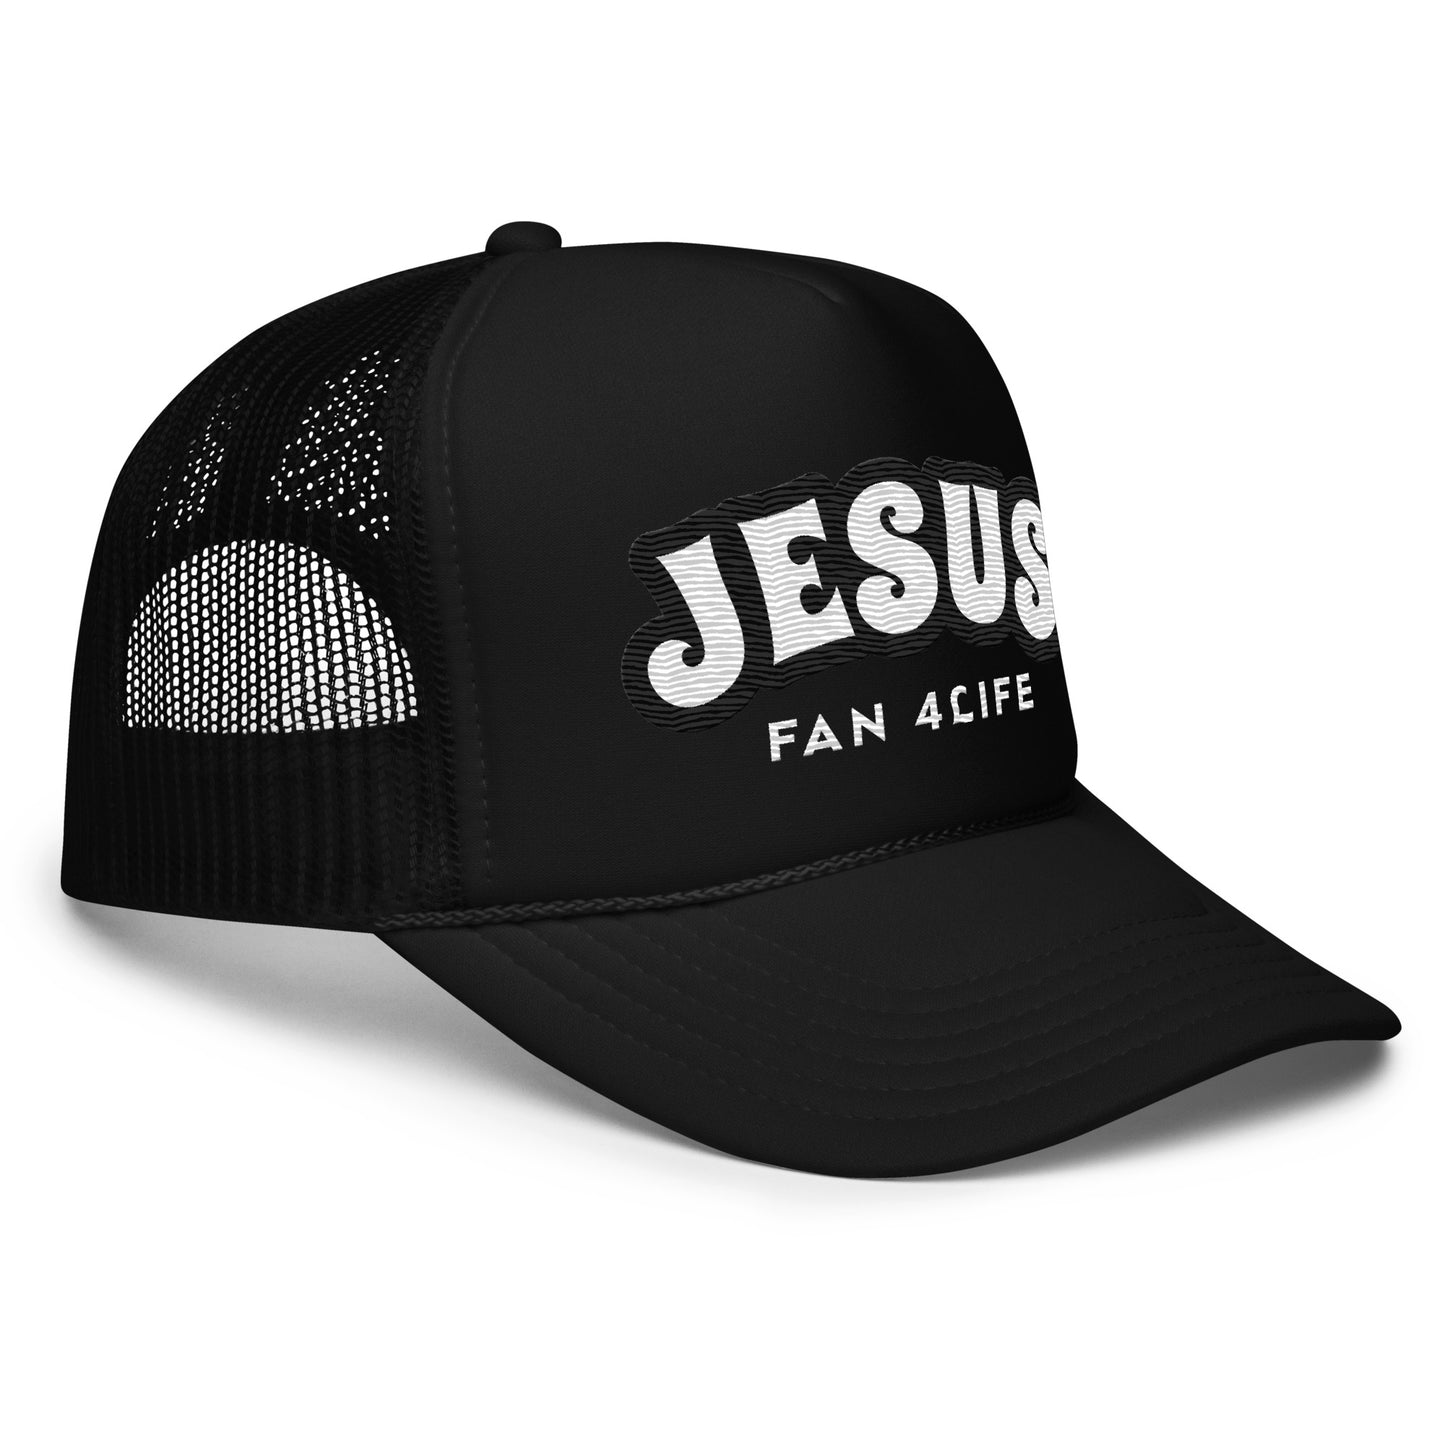 Jesus Fan 4Life- Foam trucker hat